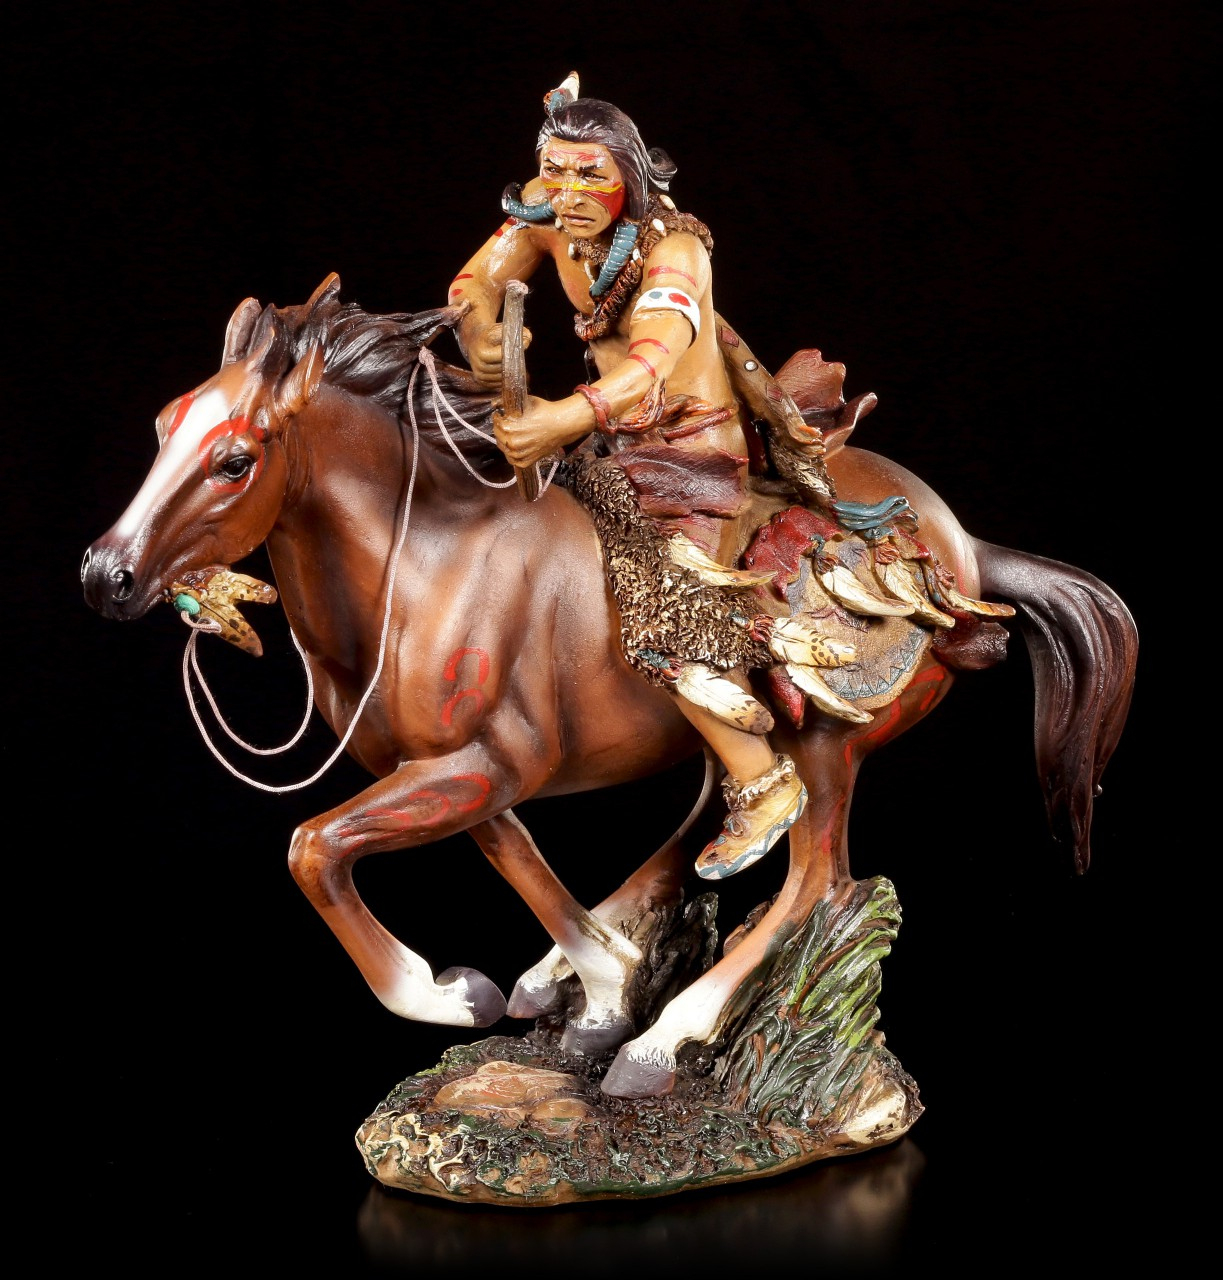 Indianer Figur - Krieger Auf Pferd | Indianer Mit Pferd tout Religion Der Indianer